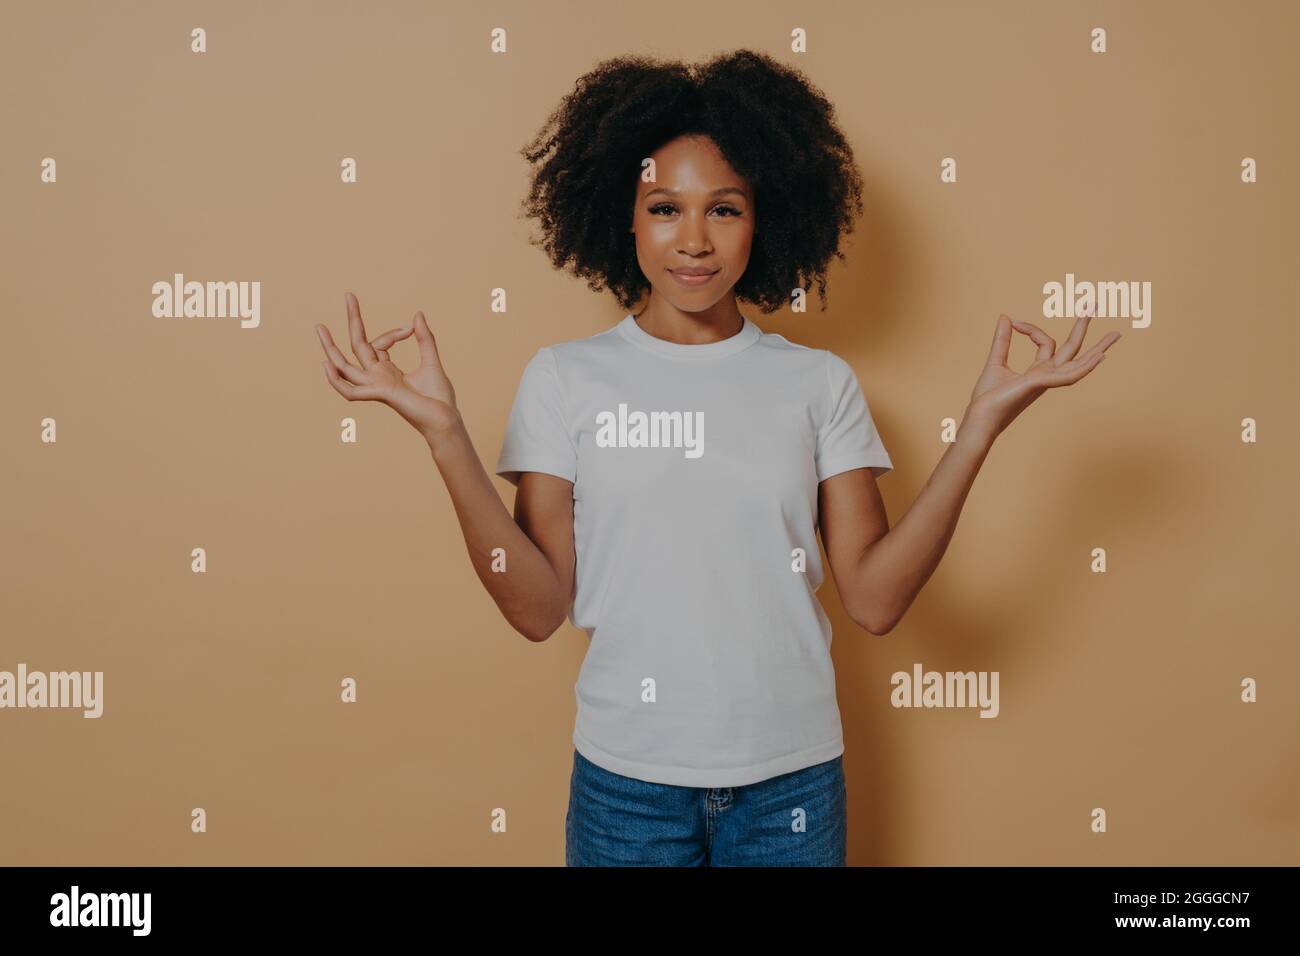 Friedliche afro amerikanische junge Frau, die die Hände in Mudra-Geste hält, isoliert auf beigefarbenen Wänden Stockfoto